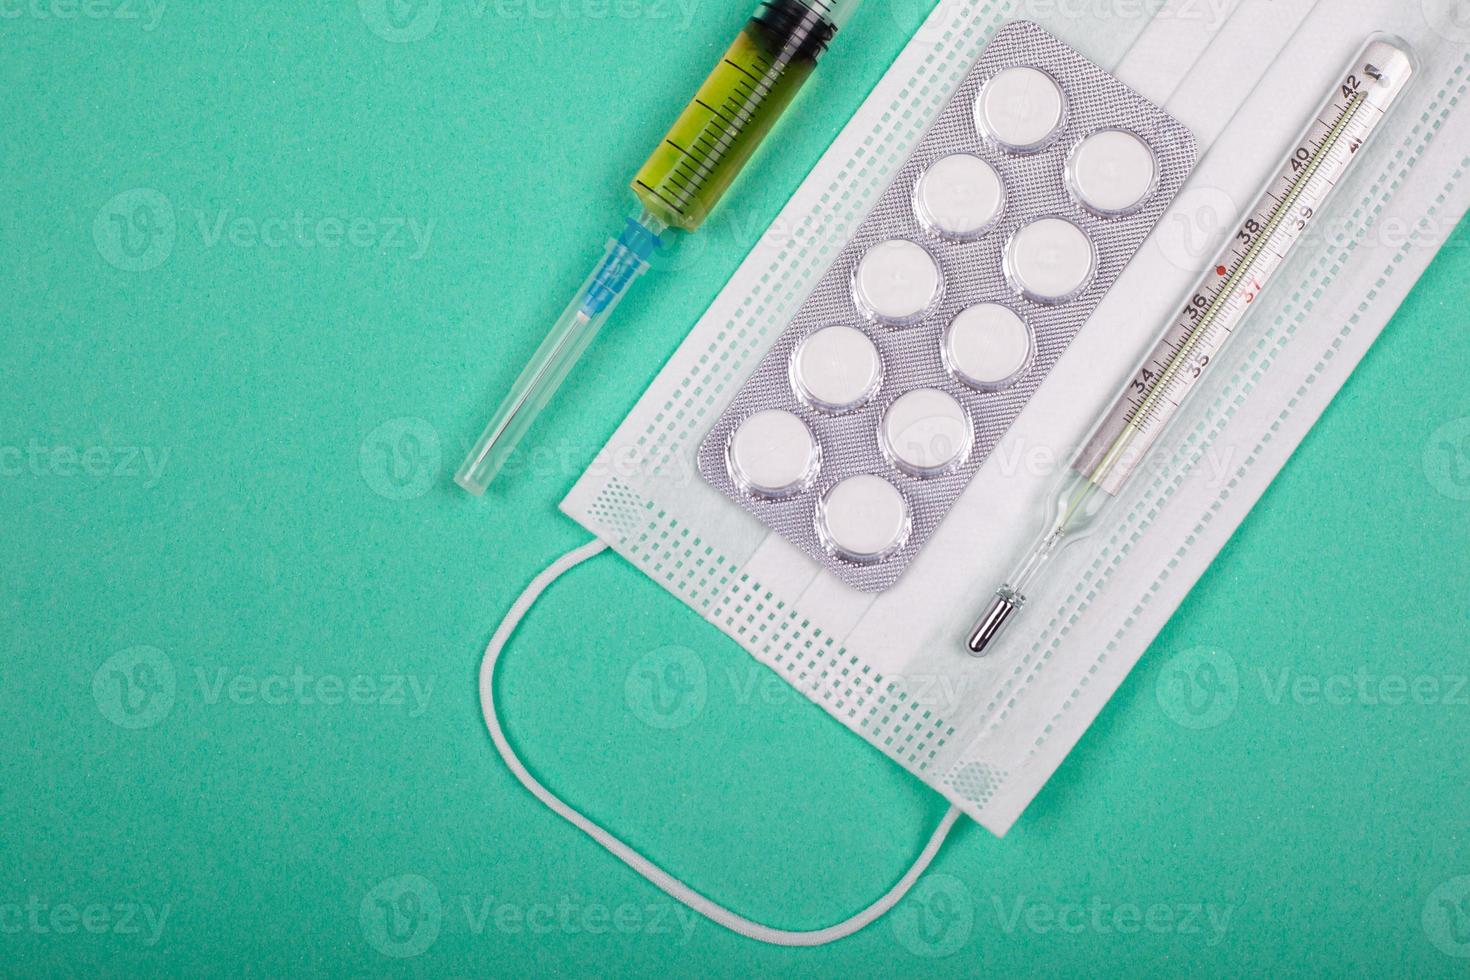 pilules, seringue, gants médicaux et masque, moyens de protection contre l'infection virale sur fond bleu-vert photo